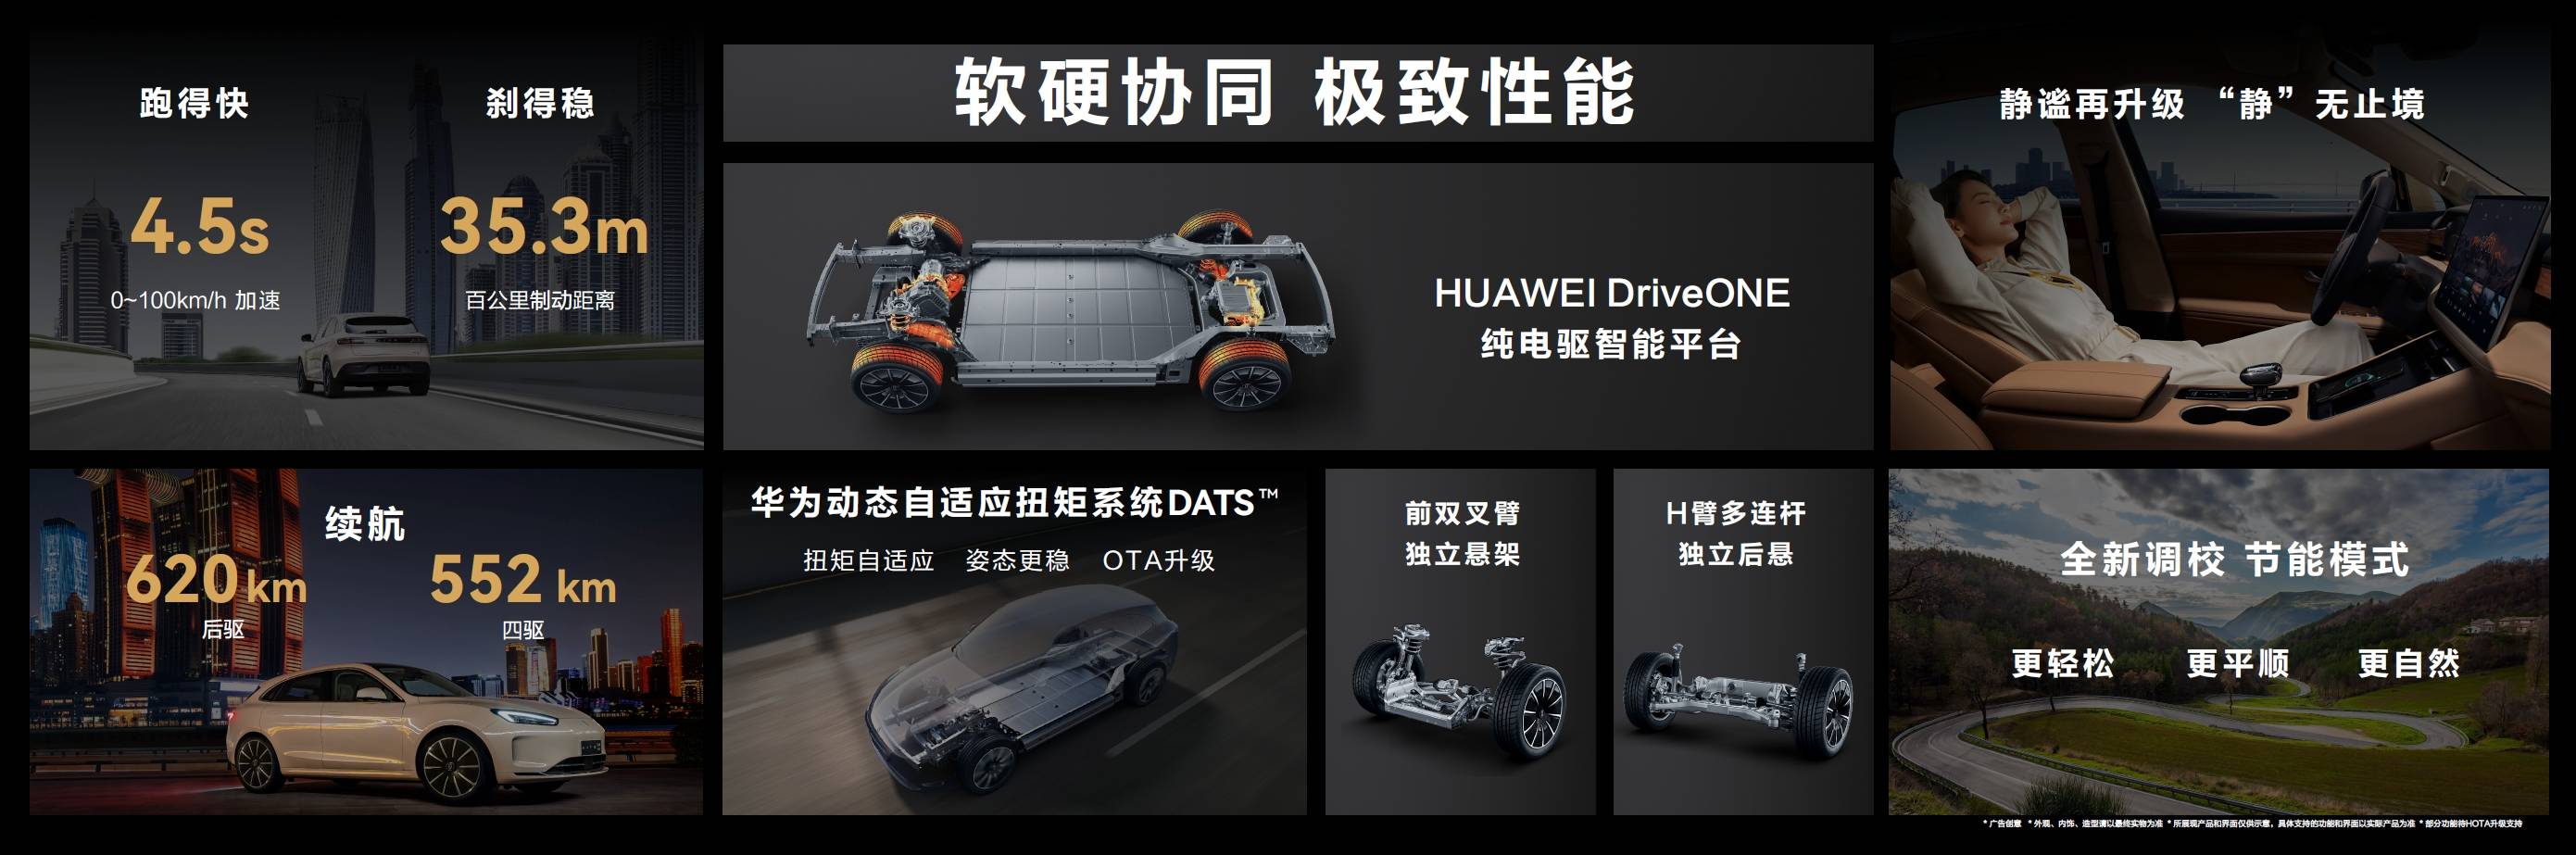 wenjie5 - Wenjie M5 EV non è alto in Cina, ma non sottovalutate la determinazione di Huawei